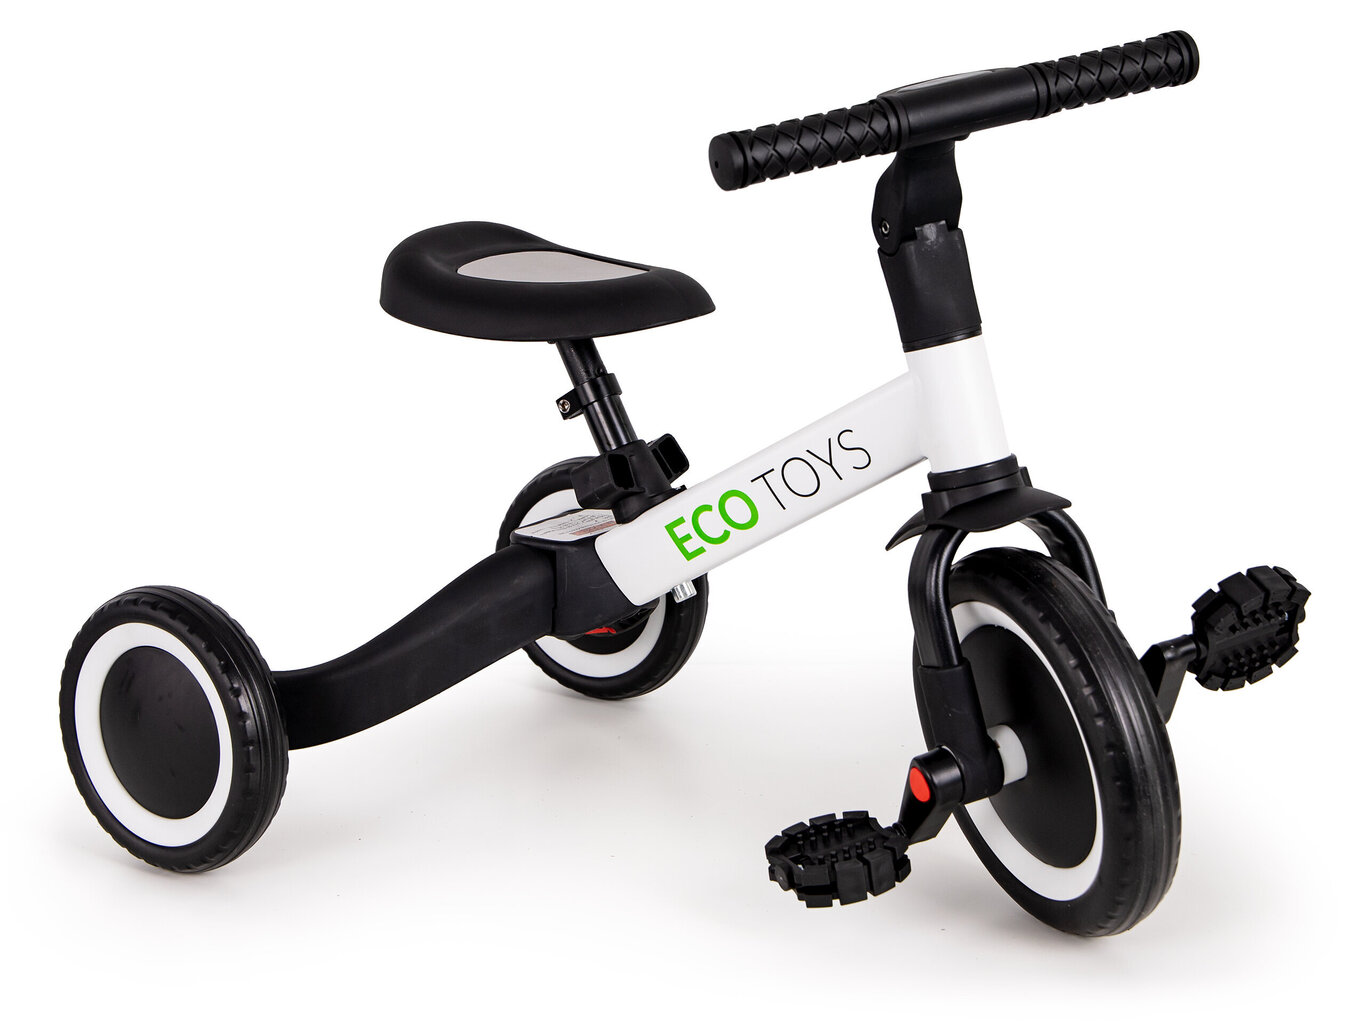 Triratis balansinis dviratis 4in1 su pedalais kaina ir informacija | Žaislai kūdikiams | pigu.lt